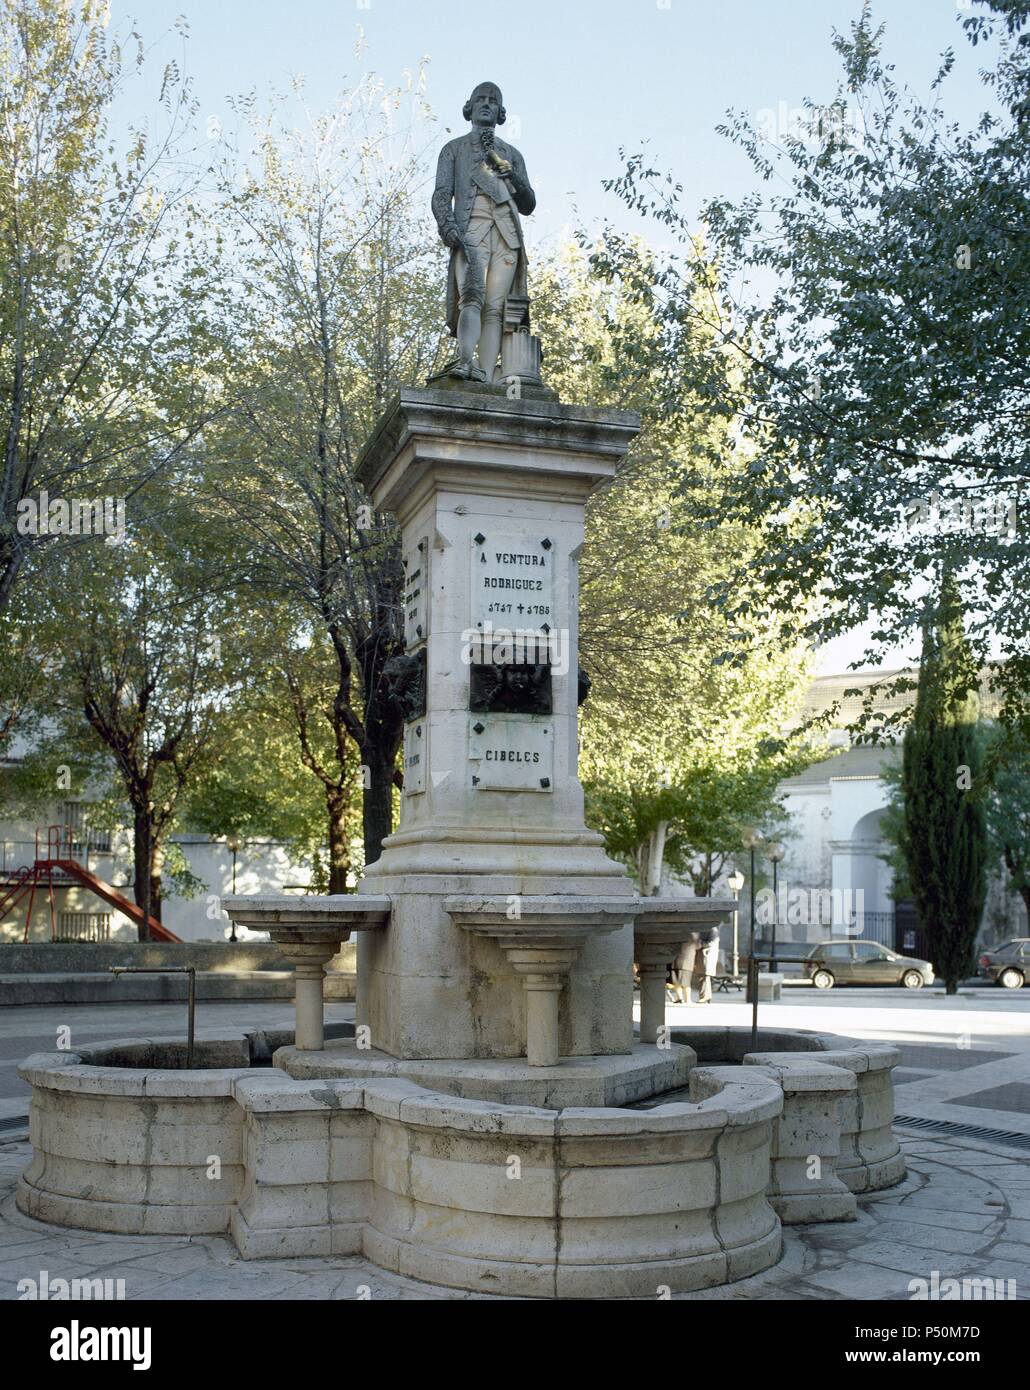 Rodriguez Tizon, Ventura (1717-1785). L'architetto spagnolo, rappresentante del barocco trend accademico. Monumento eretto in memoria di lui nella sua città natale. A Ciempozuelos. Spagna. Foto Stock